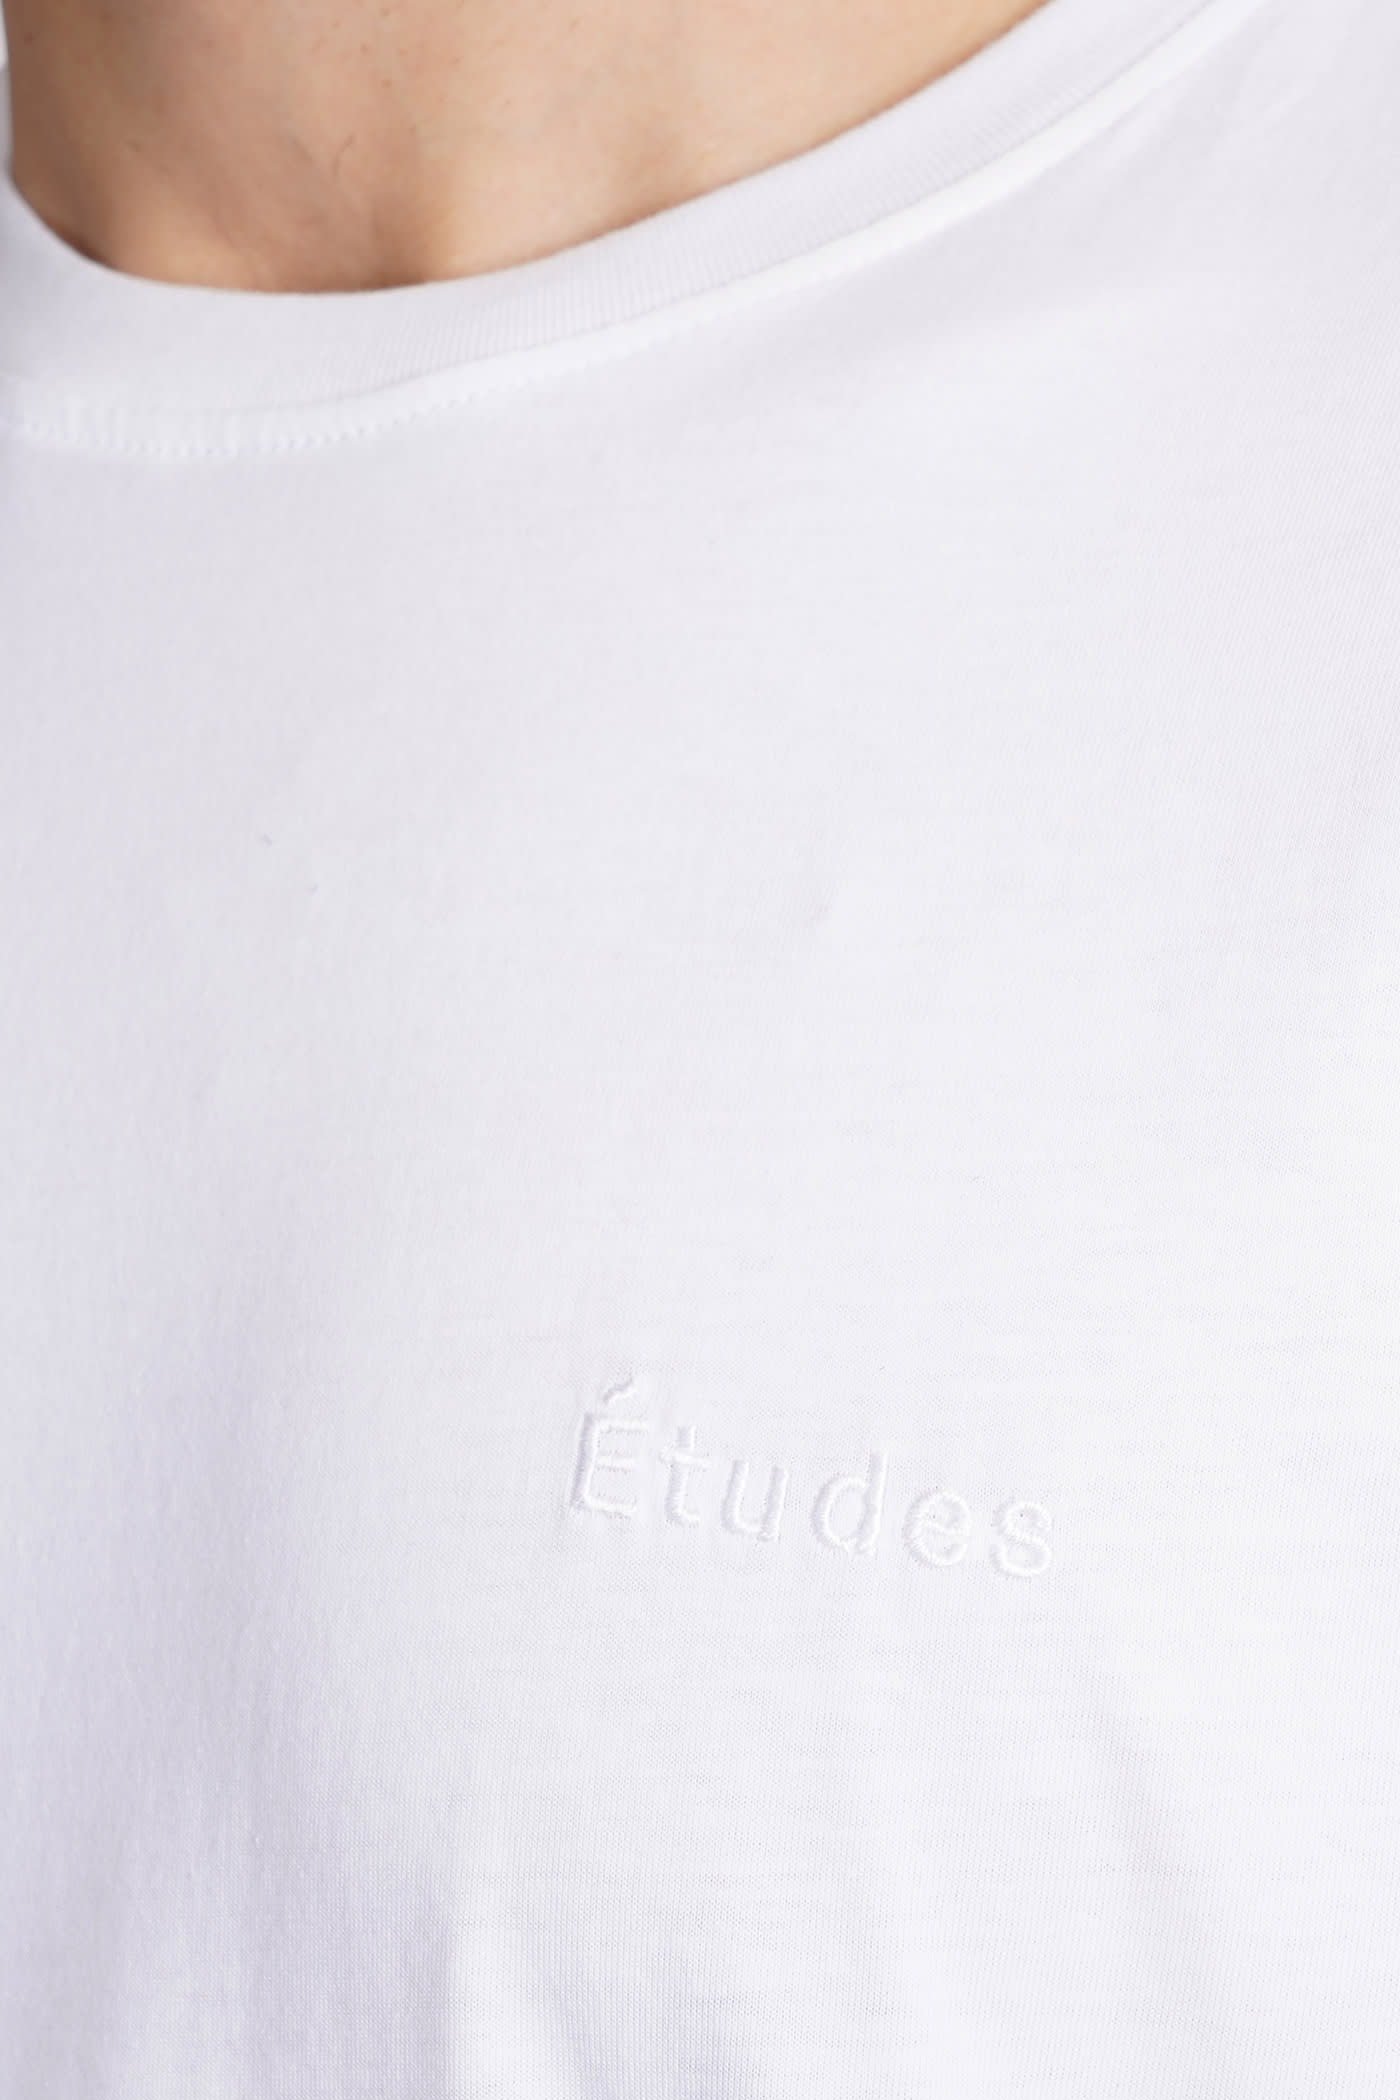 Shop Etudes Studio T-shirt In White Cotton